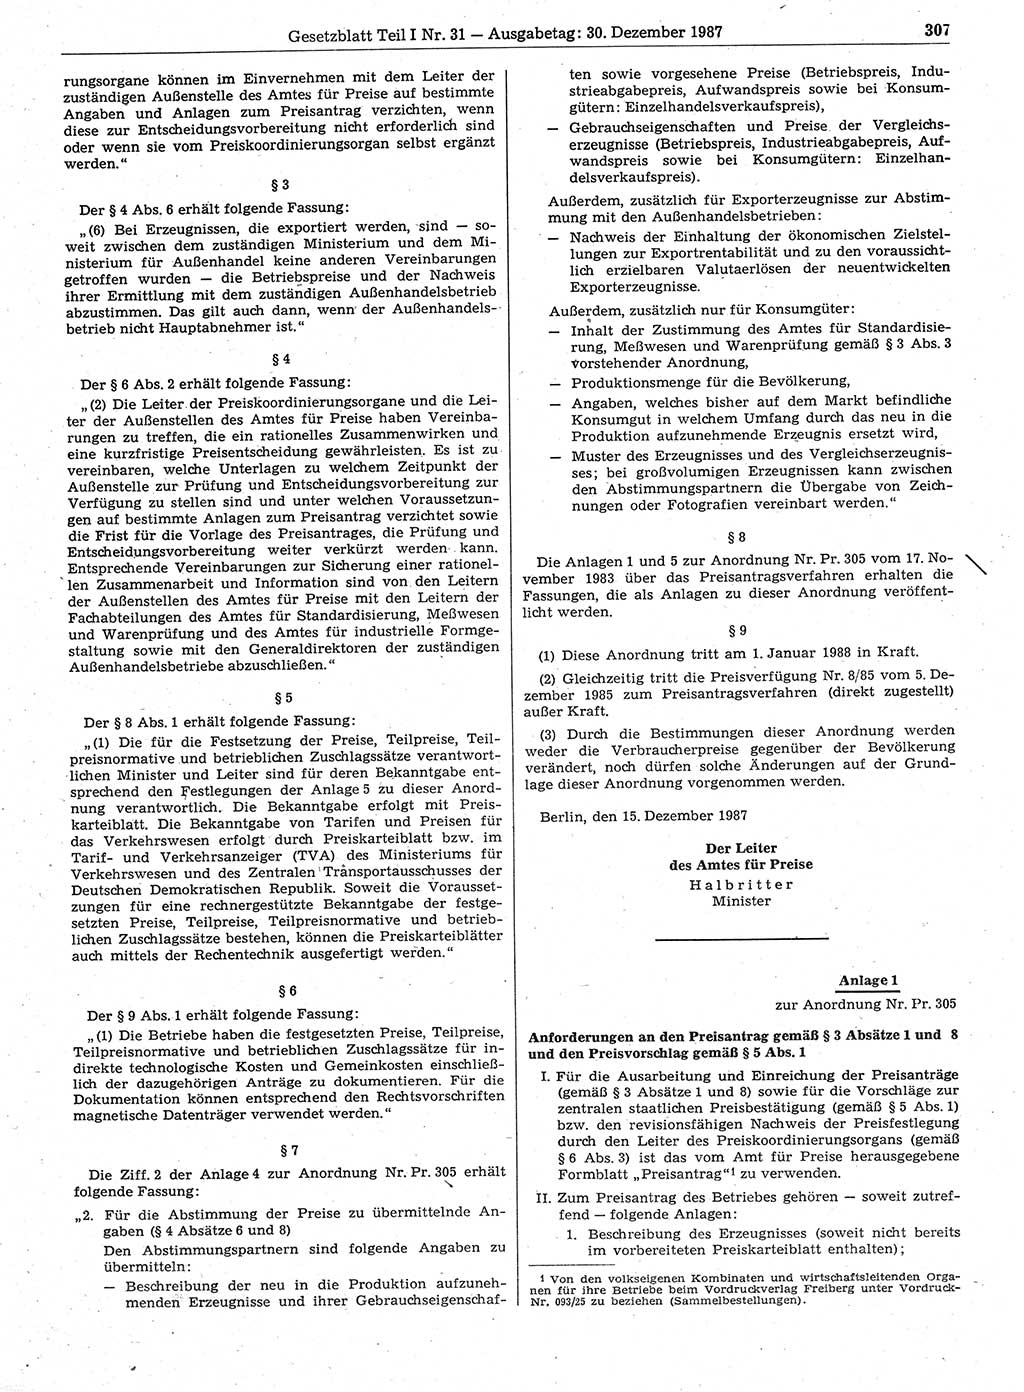 Gesetzblatt (GBl.) der Deutschen Demokratischen Republik (DDR) Teil Ⅰ 1987, Seite 307 (GBl. DDR Ⅰ 1987, S. 307)